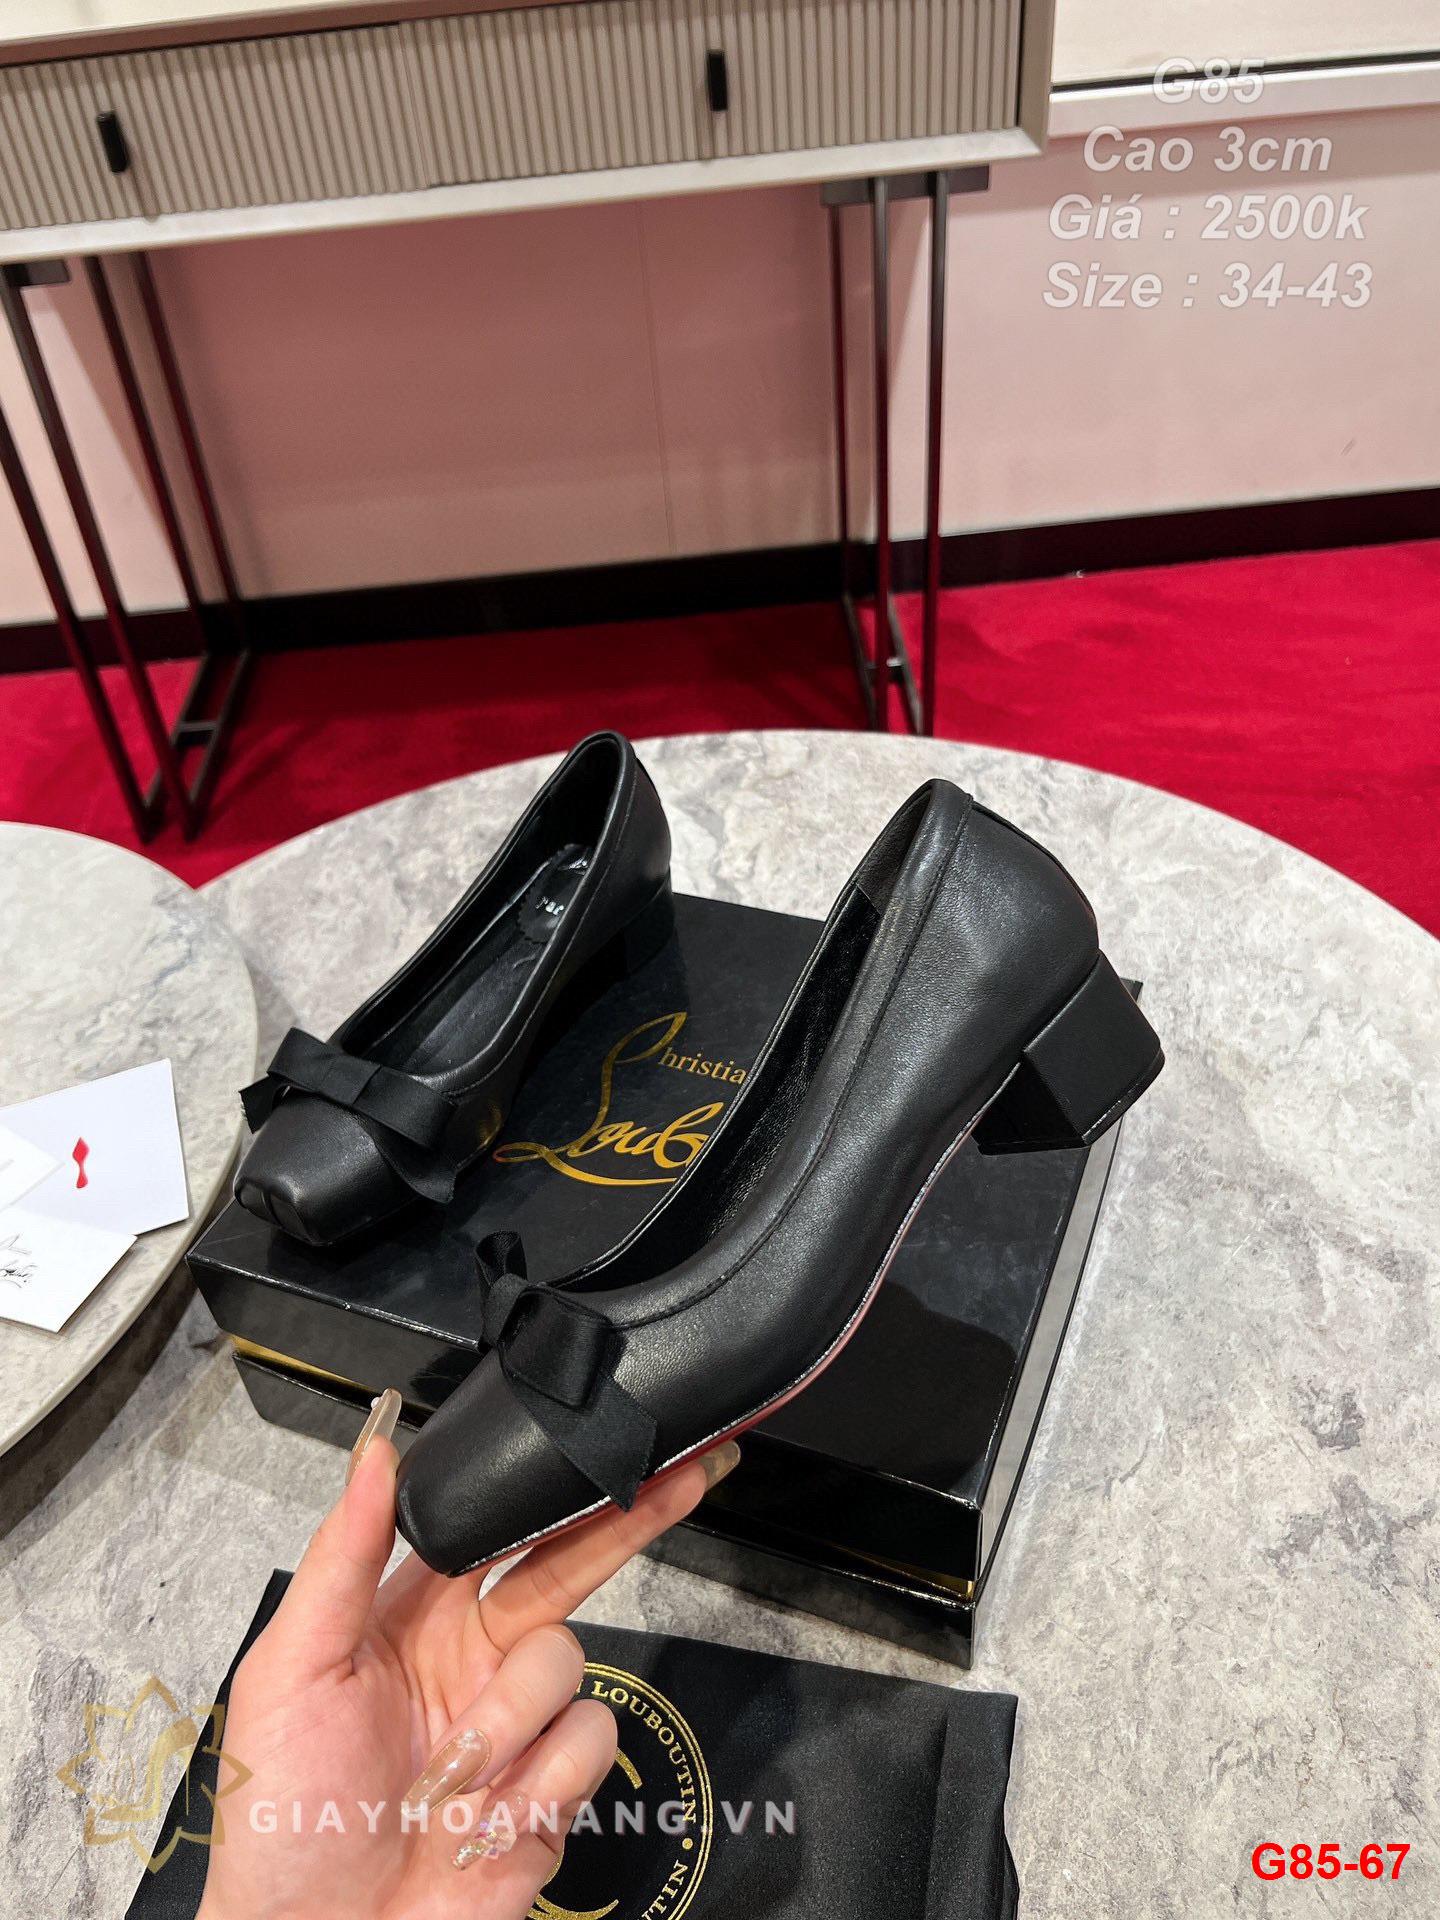 G85-67 Louboutin giày cao gót 3cm siêu cấp